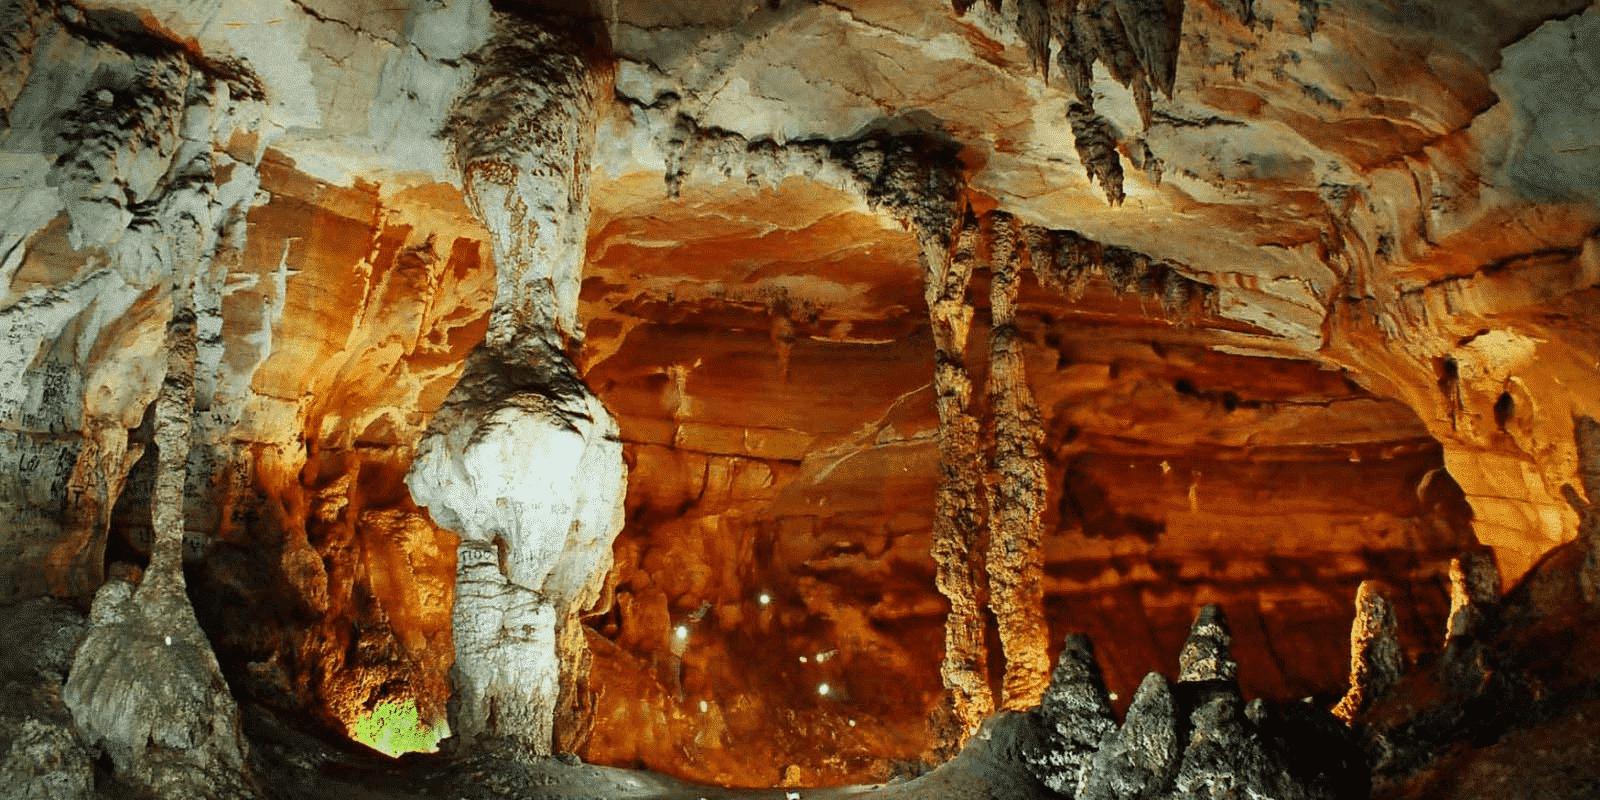 vietnam grotter med mudder til livet